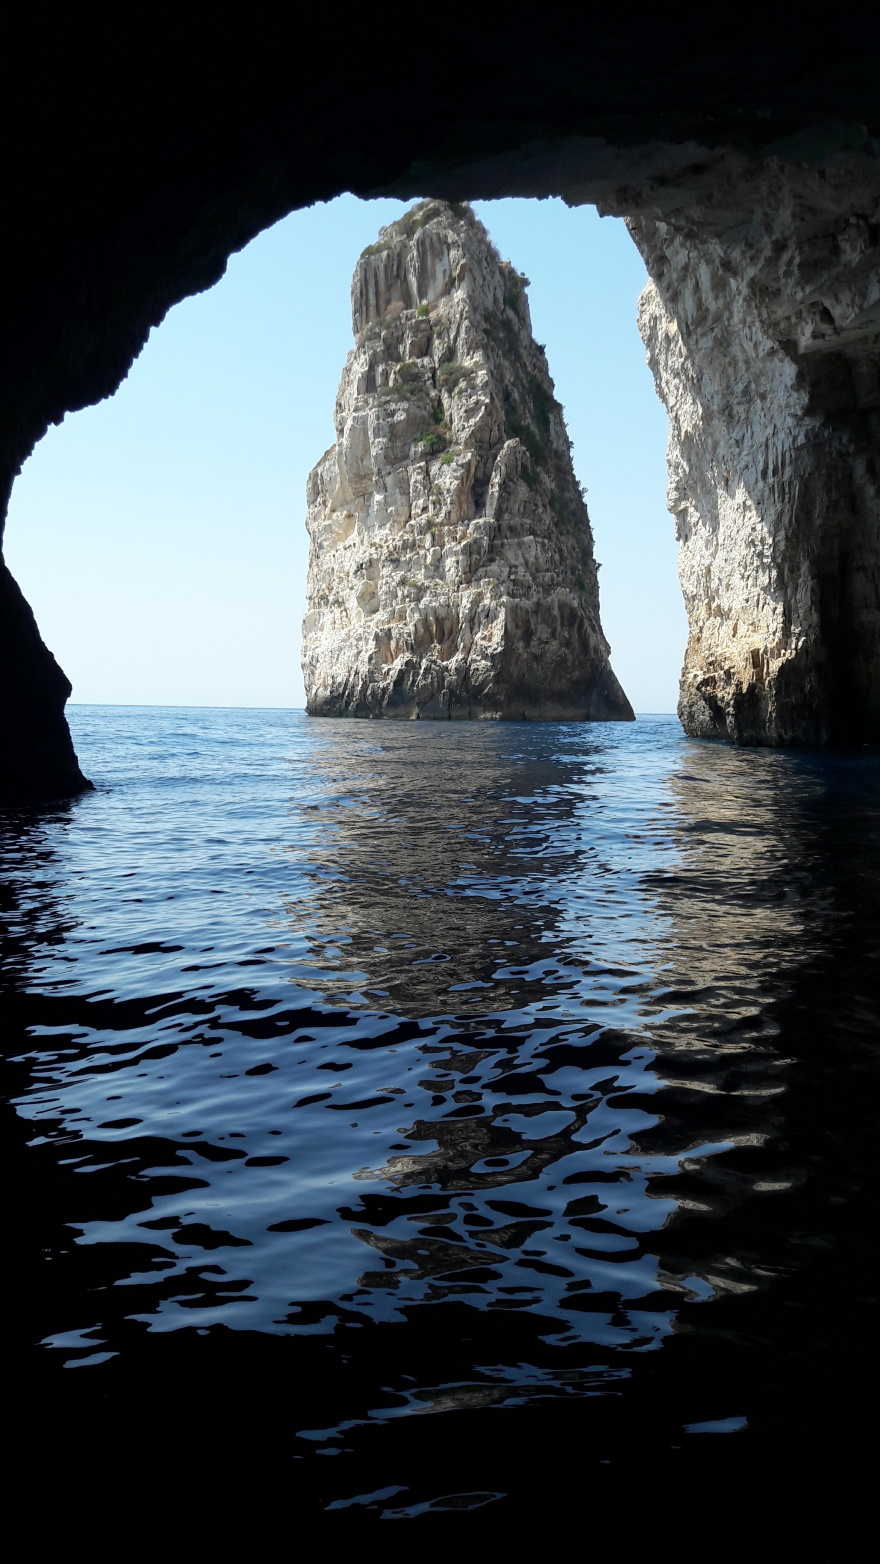 Ο Ορθόλιθος, η σπηλιά του Παπανικολή που κρυβόταν το υποβρύχιο